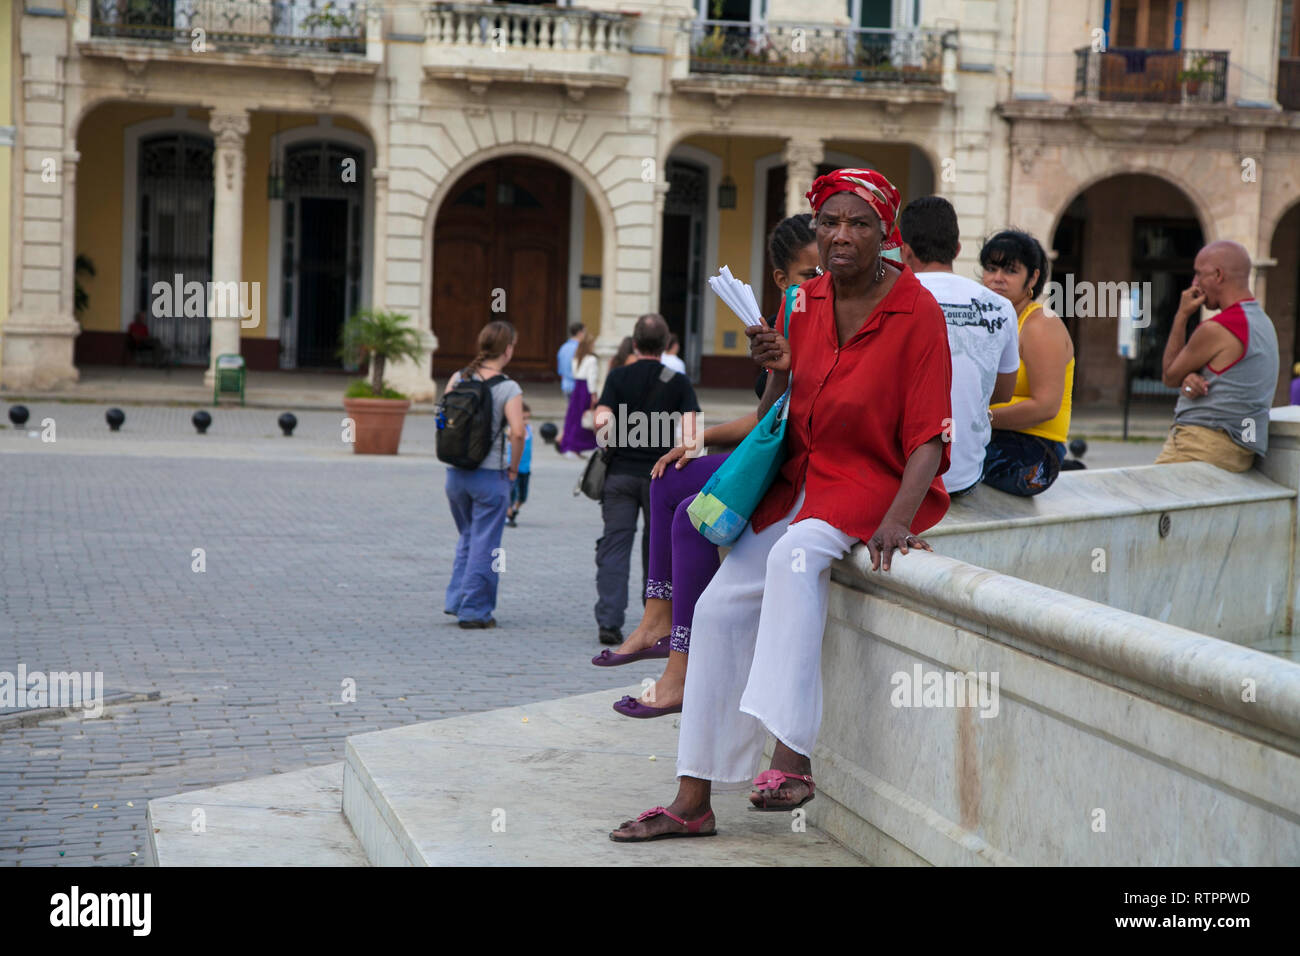 L'Avana, Cuba - 20 Gennaio 2013: una vista delle strade della città con il popolo cubano. Una commessa di arachidi è in attesa per la sua clientela Foto Stock